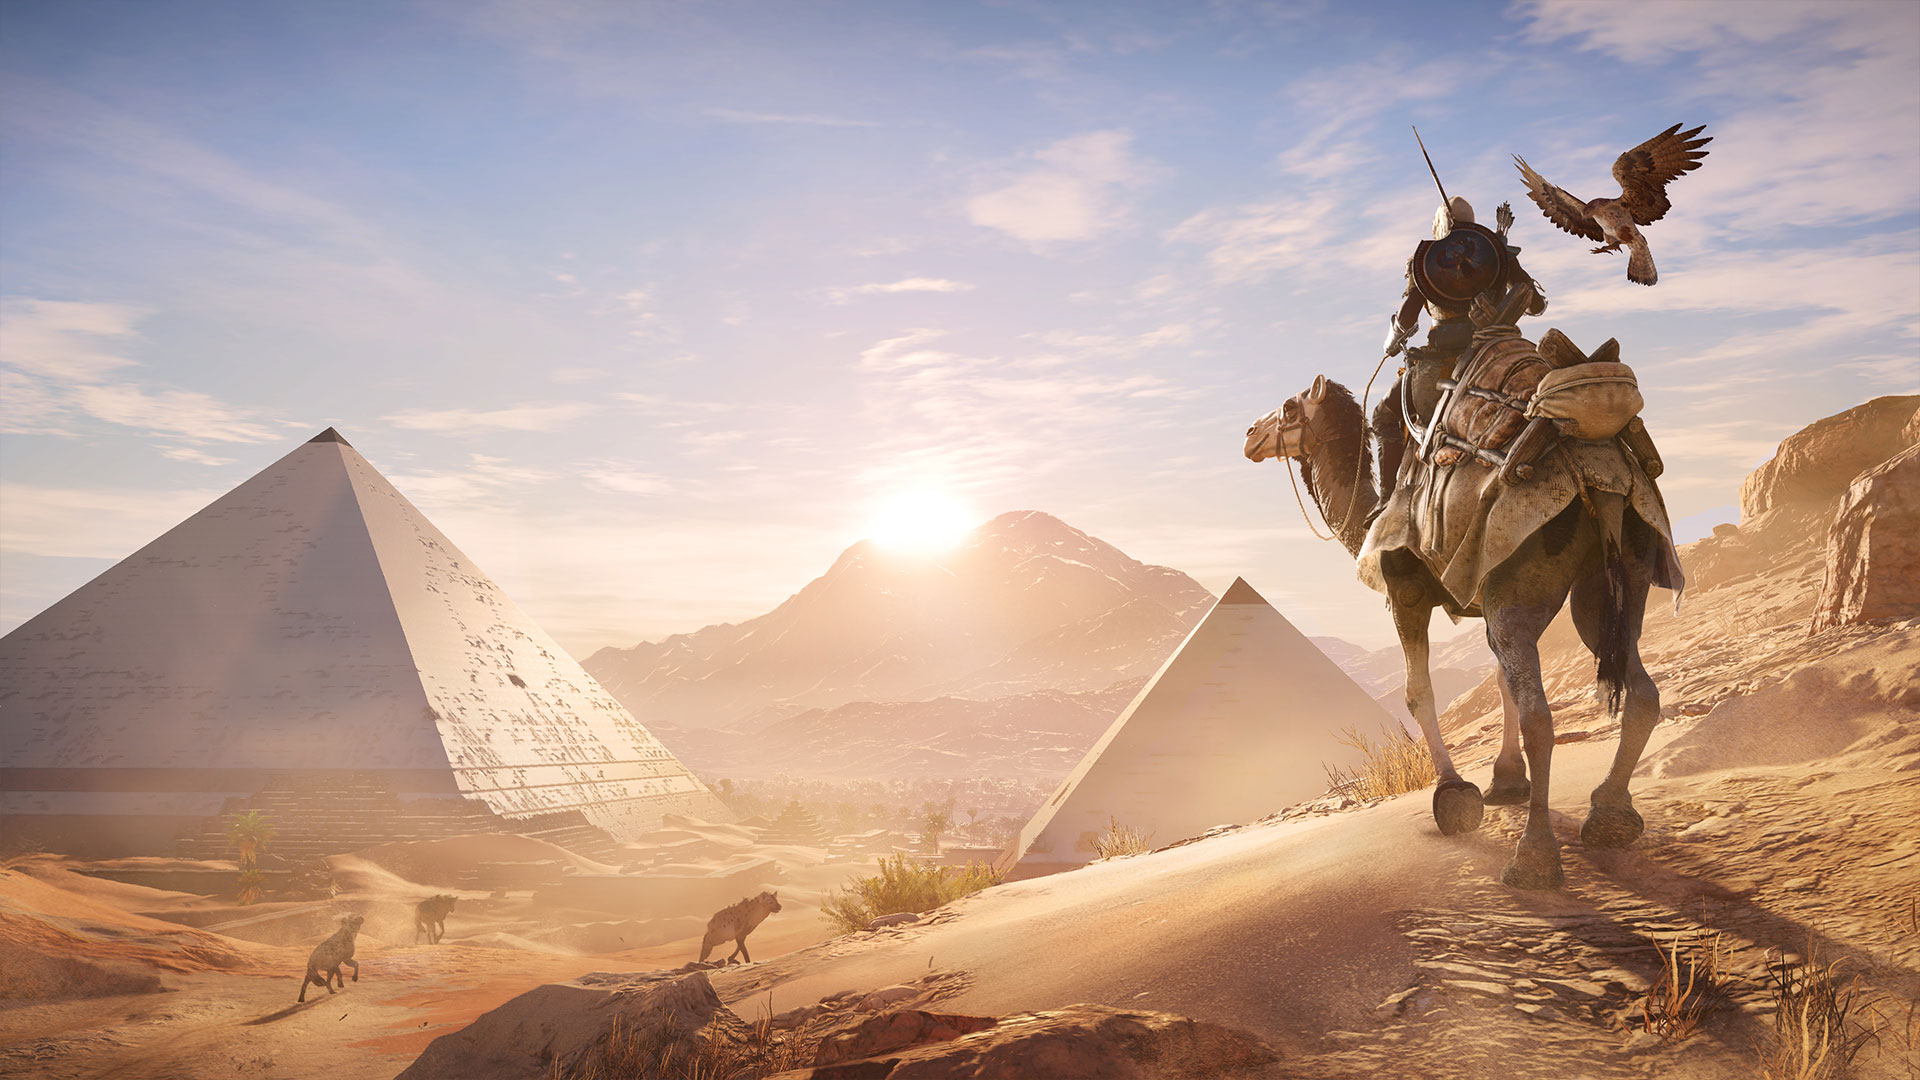 Image d'Assassin's Creed Origins, support utilisé en cours d'Histoire-Géographie